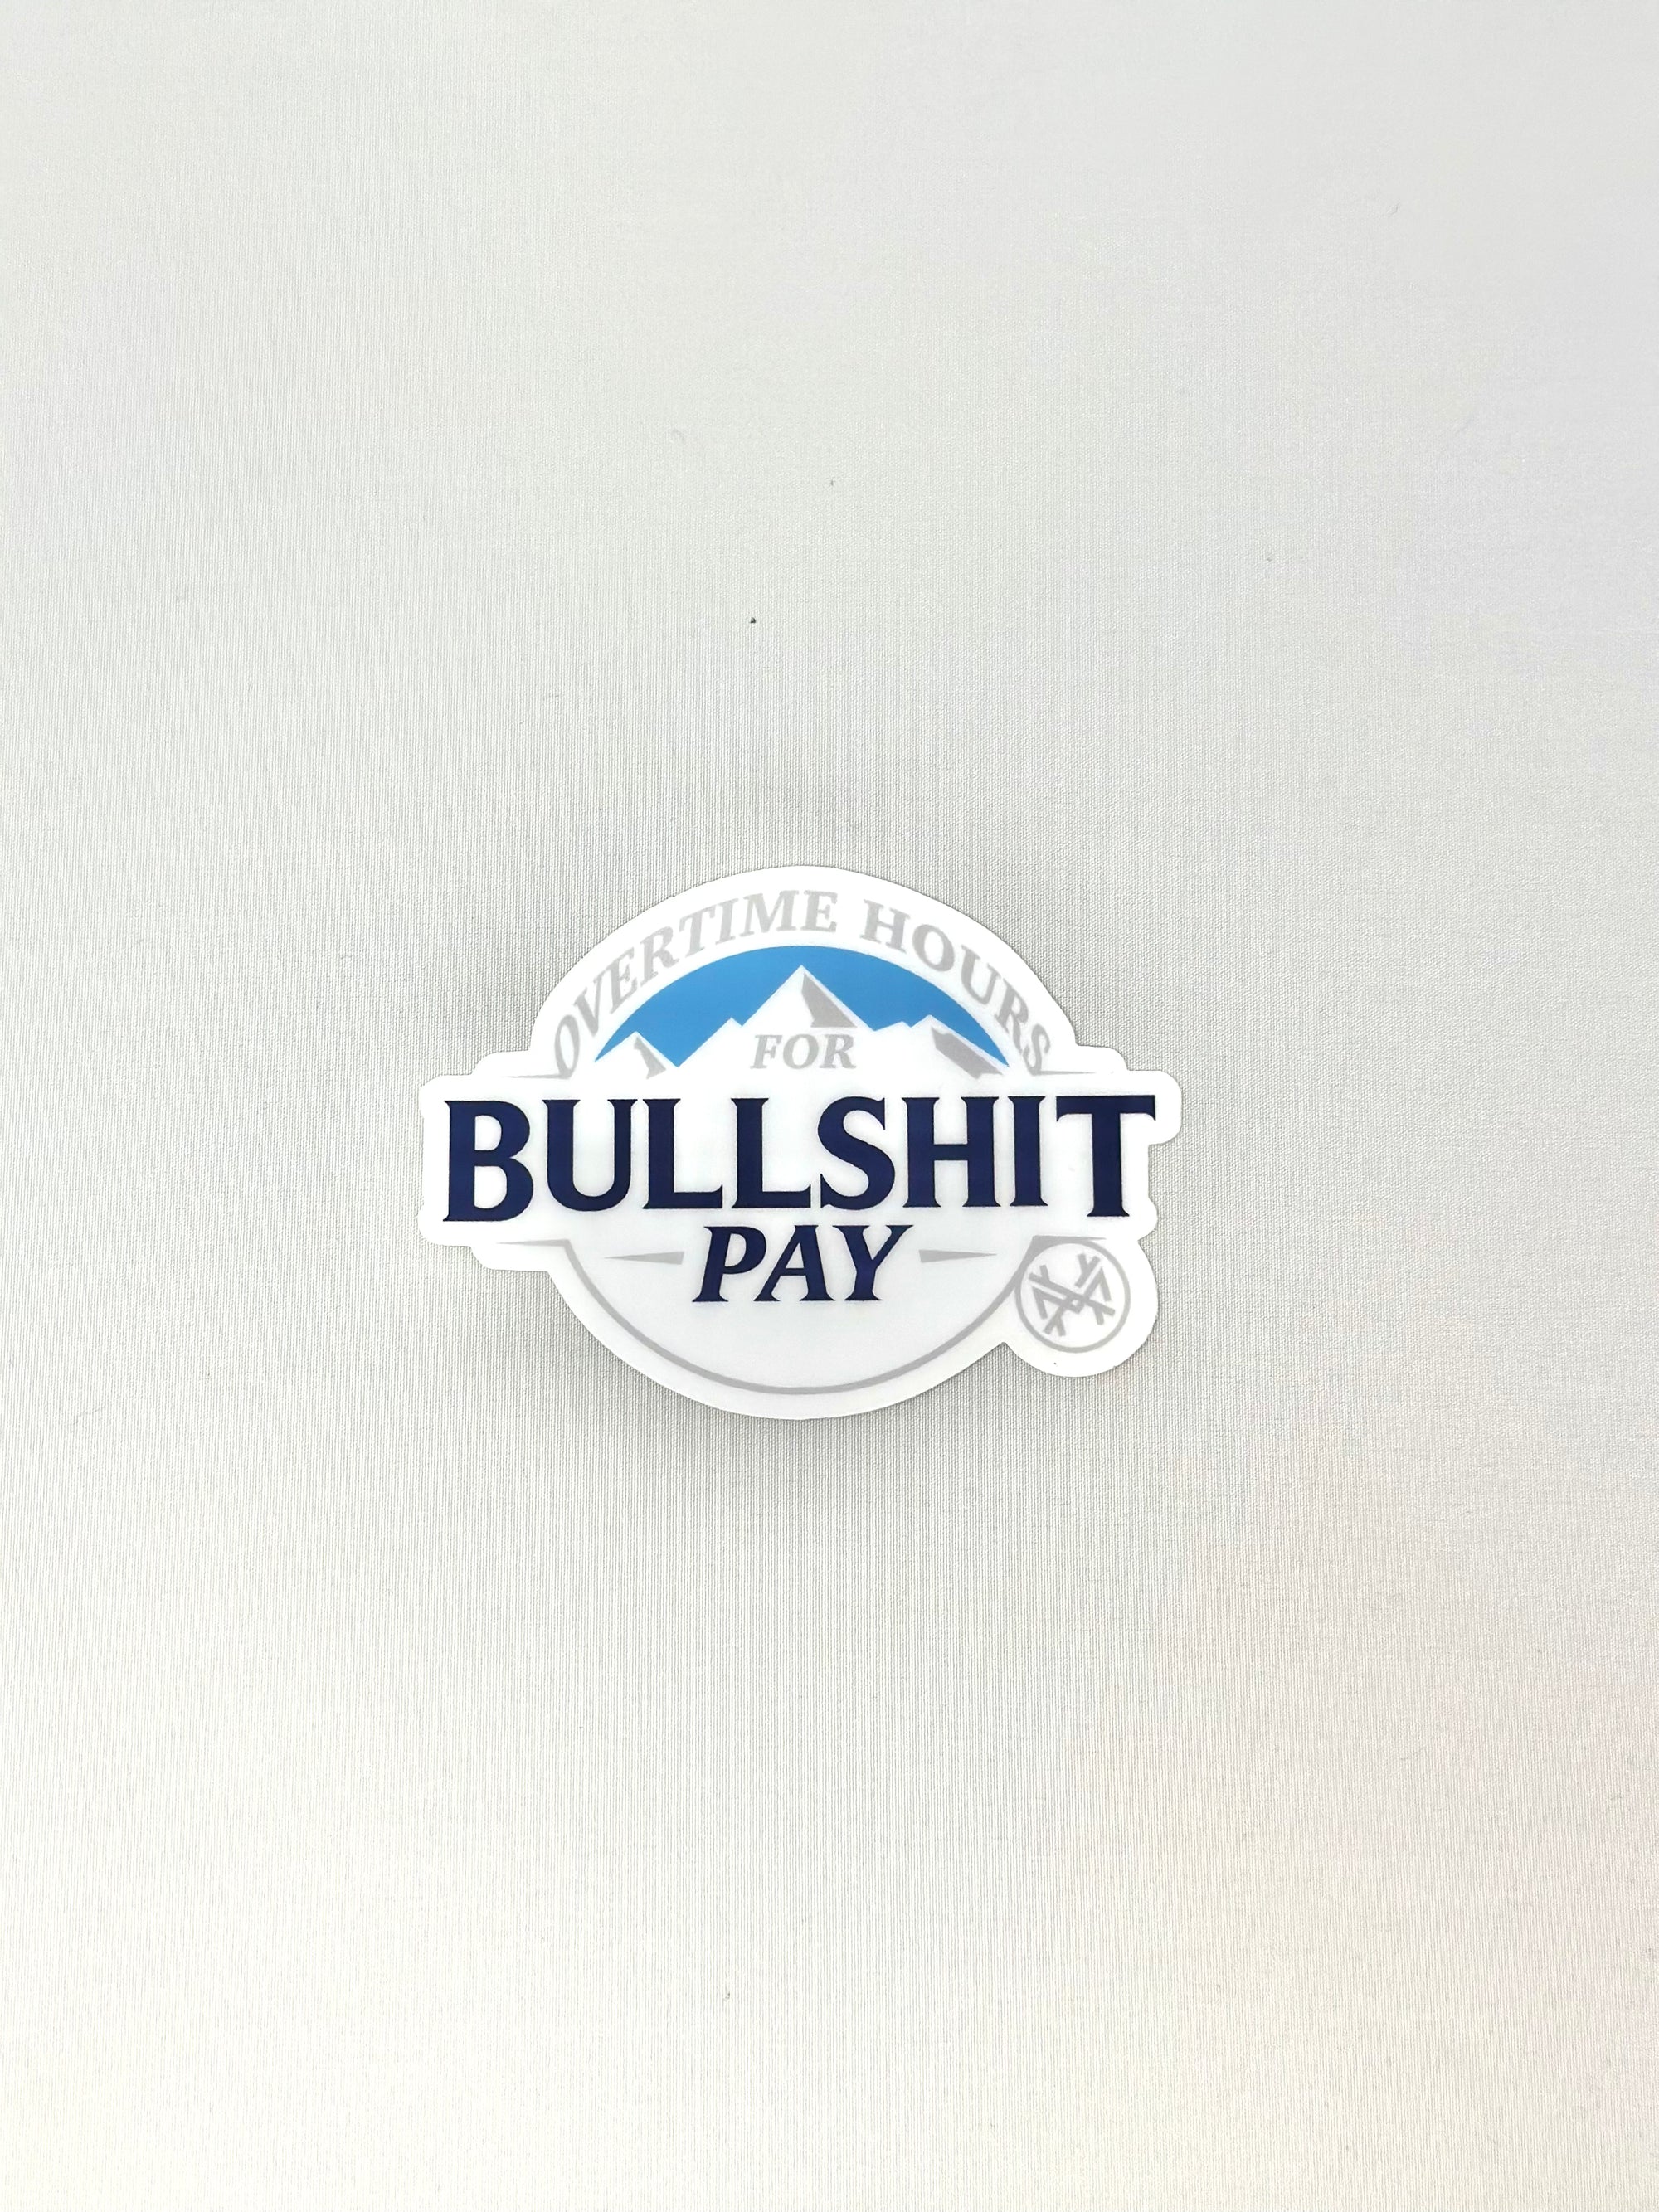 MHC Overtime Hours for Bullshit Pay Sticker